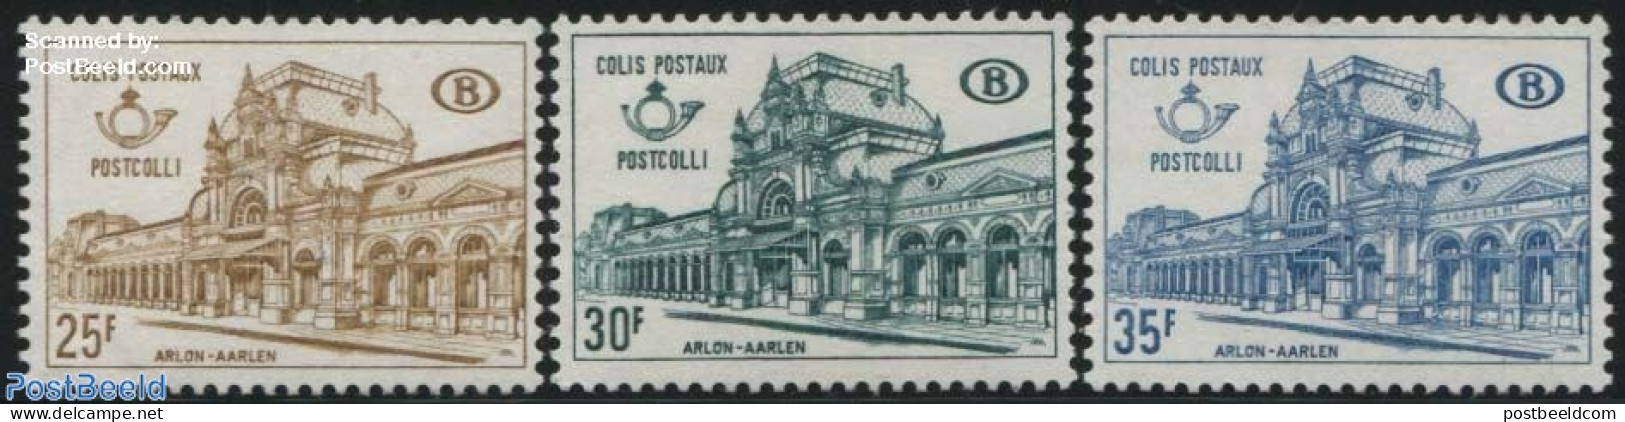 Belgium 1967 Railway Parcel Stamp 3v, Mint NH, Transport - Railways - Ongebruikt